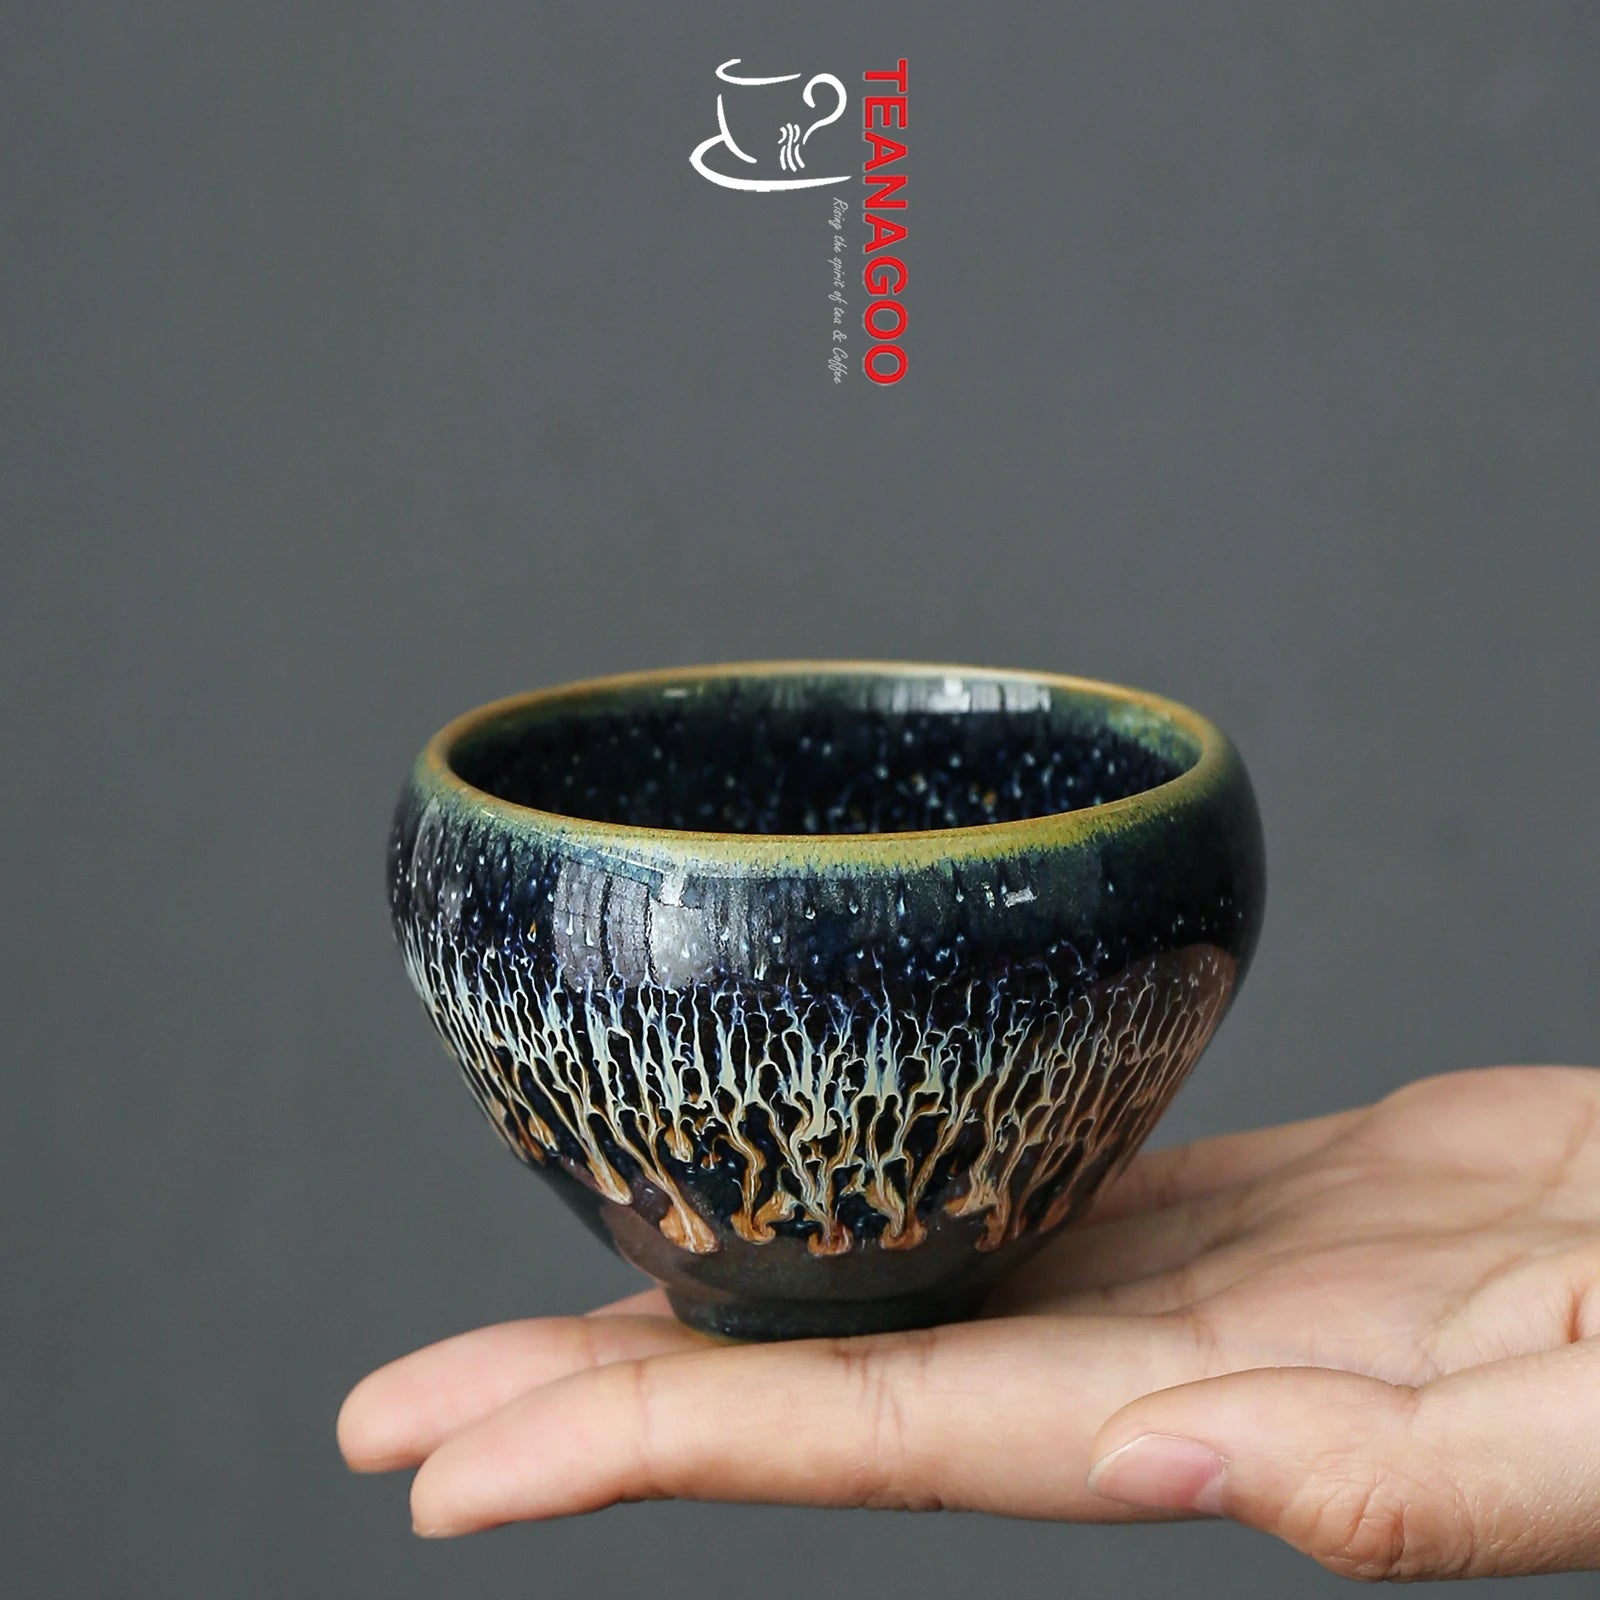 Ceramic Jianzhan Jian Ware Handmade Tenmoku Tea Cup 80ml